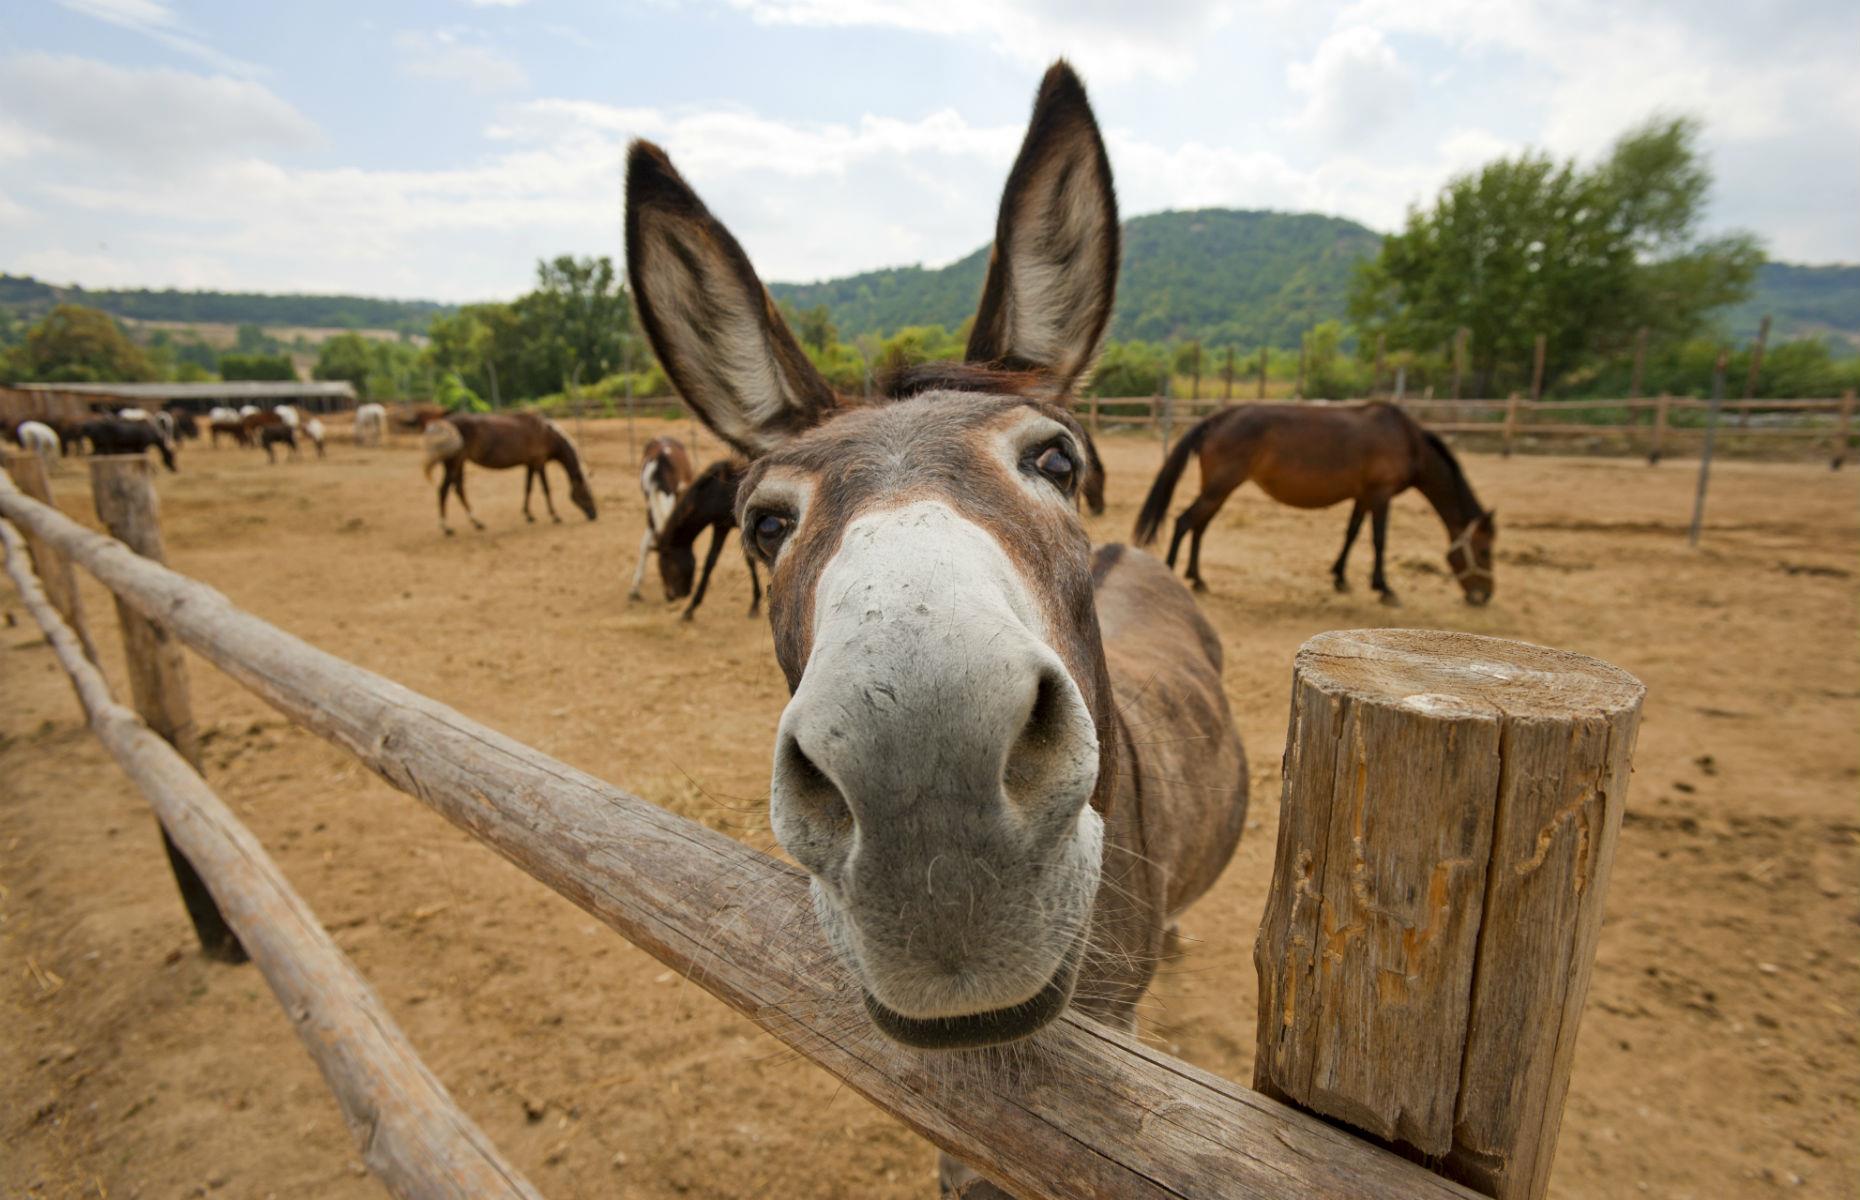 The EU: A blogging donkey – $9.5 million (£7.1m)